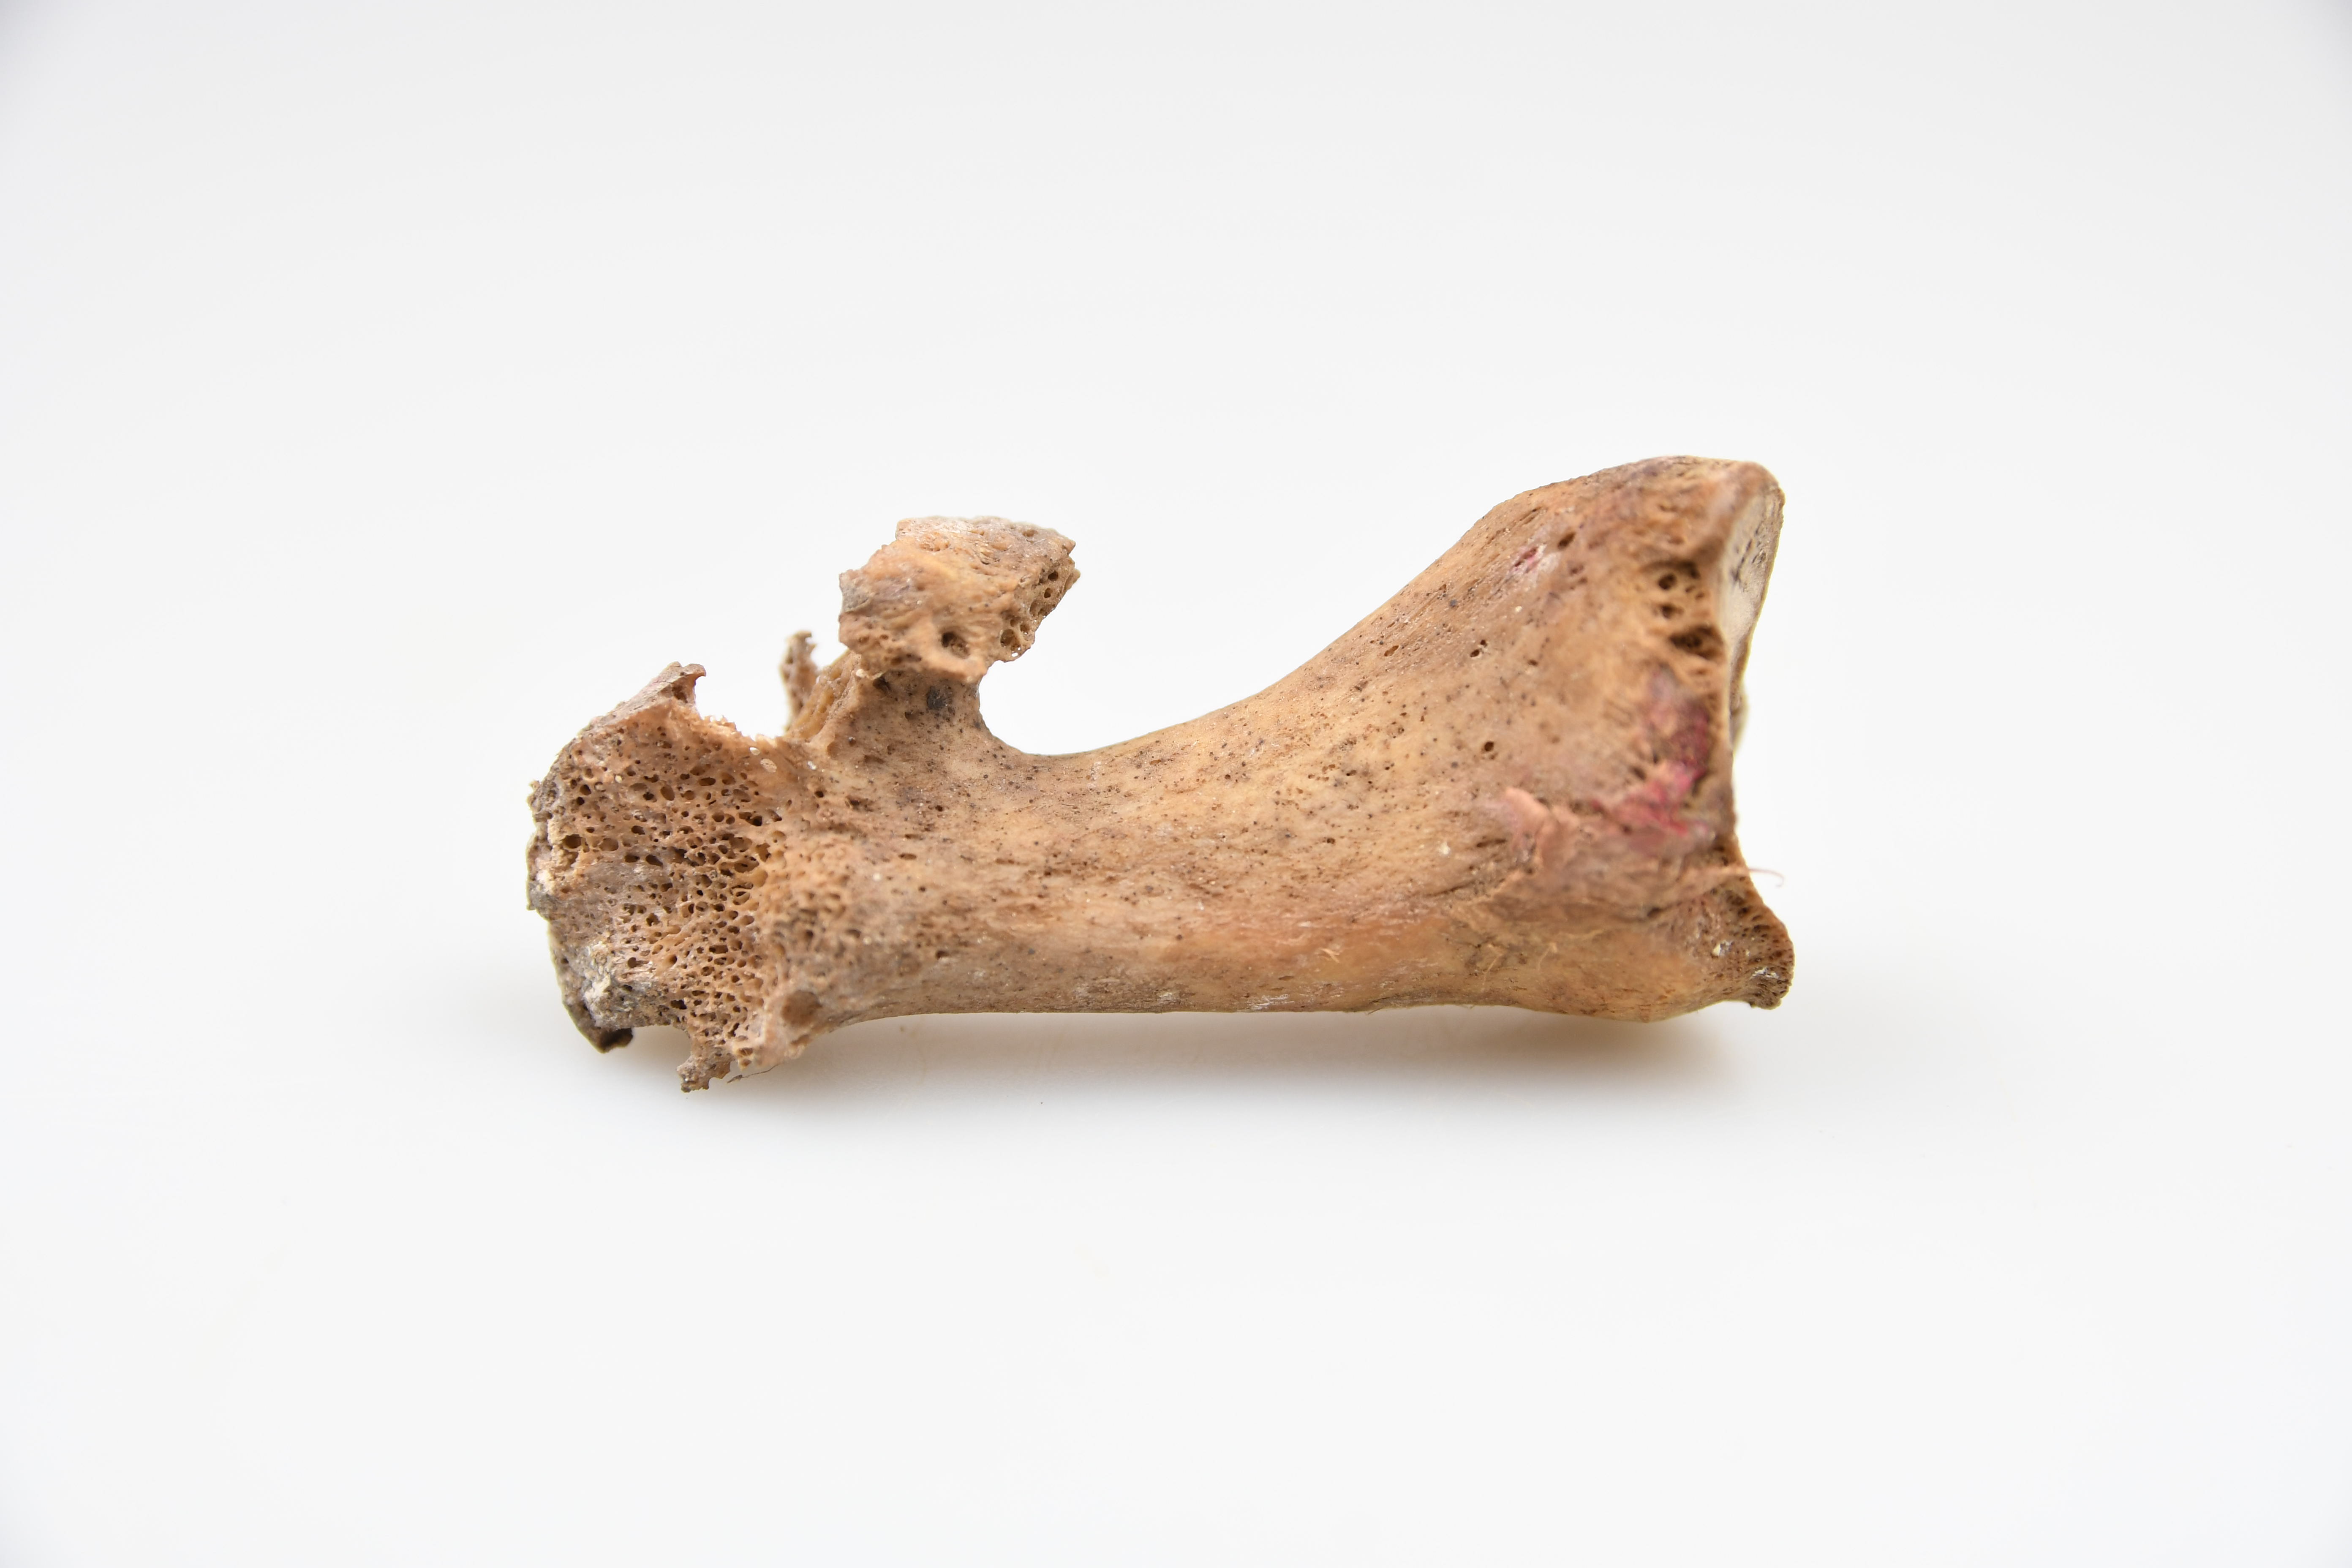 Course Image Bioarcheologijos pagrindai (Žmogaus kūno sandaros pagrindai, skeleto ir dantų anatomija - 5 kr.; Taikomieji žmogaus skeleto ir dantų tyrimai - 3 kr.; Gyvūnų skeleto anatomija, taikomieji gyvūnų kaulų tyrimai - 4 kr.; Archeobotanikos pagrindai, 